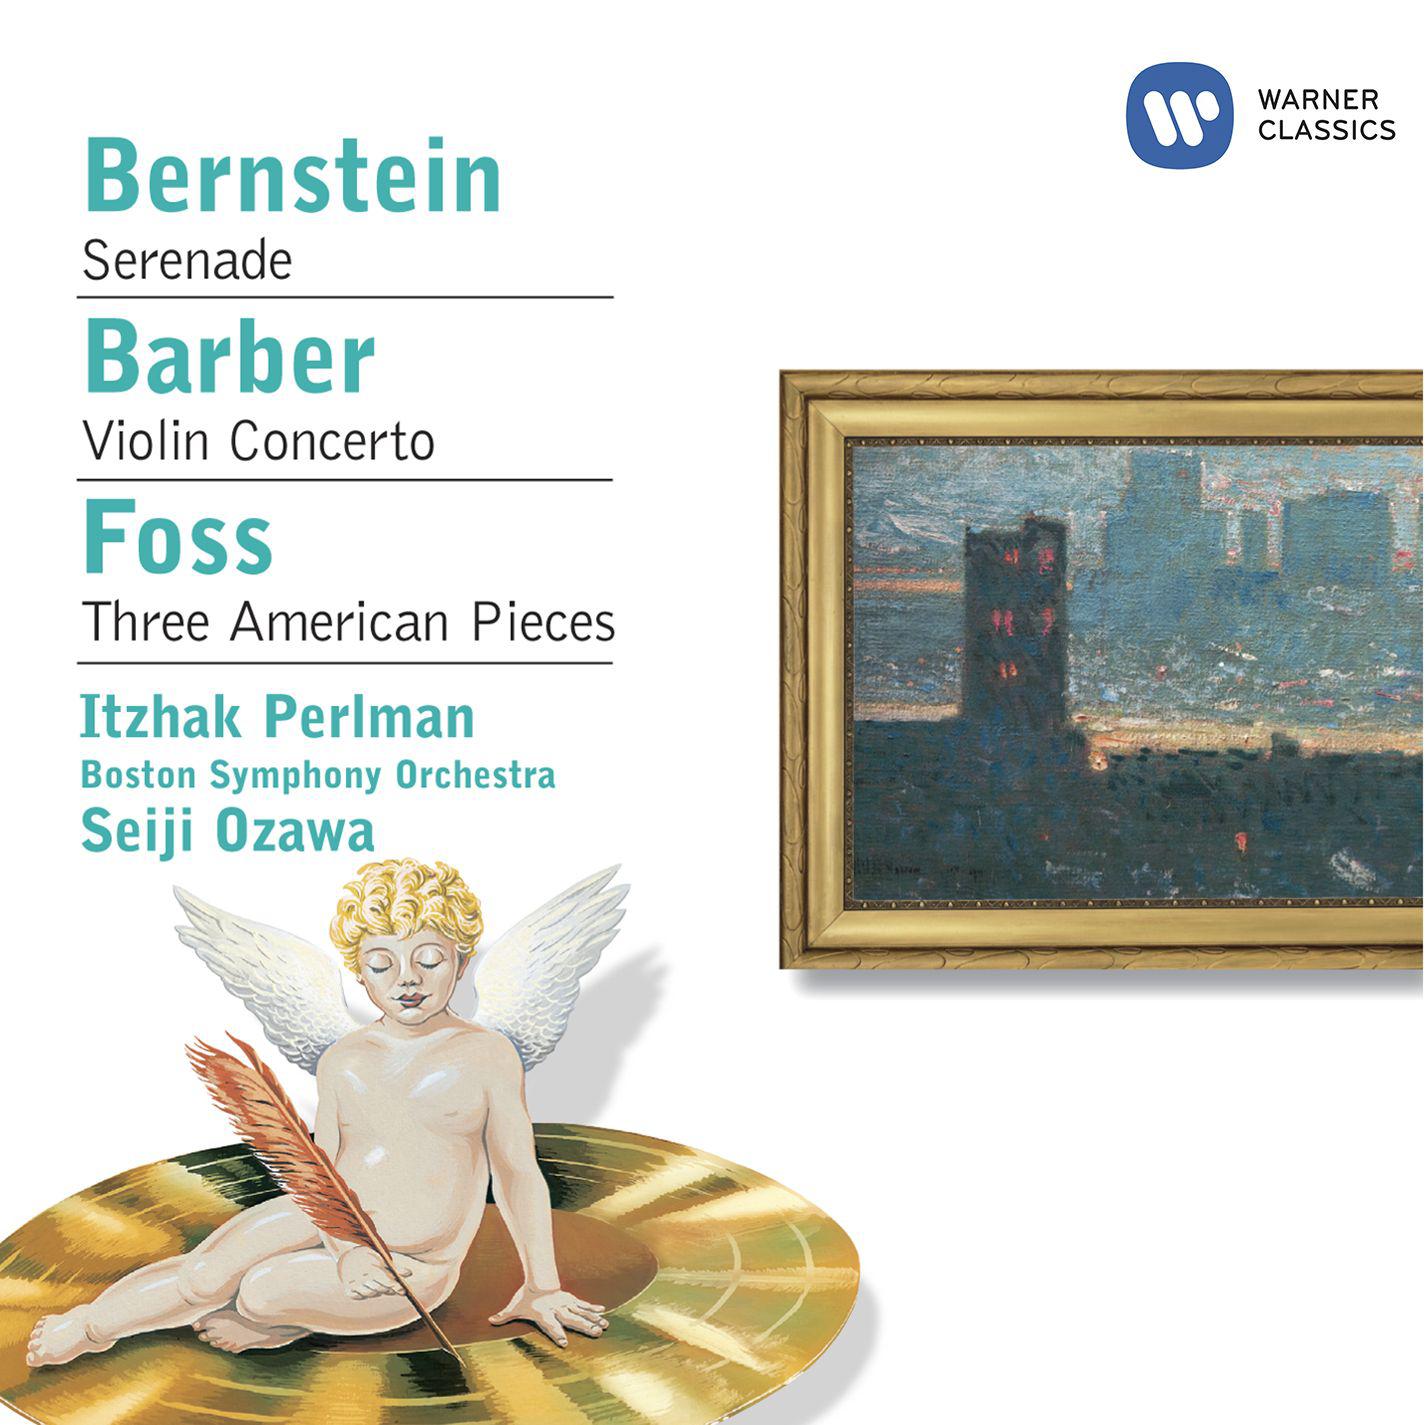 Bernstein: Serenade - Barber: Violin Concerto - Foss: Three American Pieces